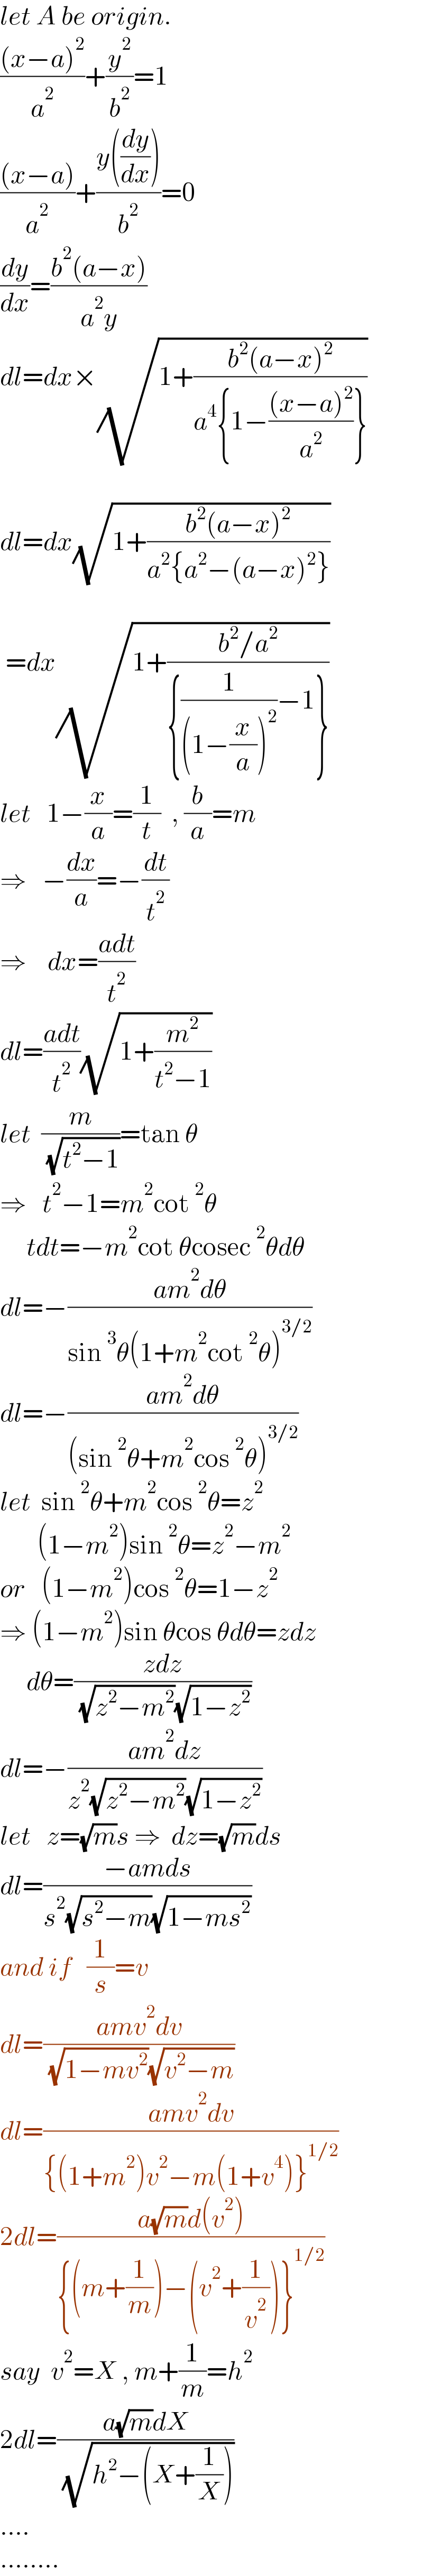 let A be origin.  (((x−a)^2 )/a^2 )+(y^2 /b^2 )=1  (((x−a))/a^2 )+((y((dy/dx)))/b^2 )=0  (dy/dx)=((b^2 (a−x))/(a^2 y))  dl=dx×(√(1+((b^2 (a−x)^2 )/(a^4 {1−(((x−a)^2 )/a^2 )}))))    dl=dx(√(1+((b^2 (a−x)^2 )/(a^2 {a^2 −(a−x)^2 }))))     =dx(√(1+((b^2 /a^2 )/({(1/((1−(x/a))^2 ))−1}))))  let   1−(x/a)=(1/t)  , (b/a)=m  ⇒   −(dx/a)=−(dt/t^2 )  ⇒    dx=((adt)/t^2 )  dl=((adt)/t^2 )(√(1+(m^2 /(t^2 −1))))  let  (m/( (√(t^2 −1))))=tan θ  ⇒   t^2 −1=m^2 cot^2 θ       tdt=−m^2 cot θcosec^2 θdθ  dl=−((am^2 dθ)/(sin^3 θ(1+m^2 cot^2 θ)^(3/2) ))  dl=−((am^2 dθ)/((sin^2 θ+m^2 cos^2 θ)^(3/2) ))  let  sin^2 θ+m^2 cos^2 θ=z^2          (1−m^2 )sin^2 θ=z^2 −m^2   or   (1−m^2 )cos^2 θ=1−z^2   ⇒ (1−m^2 )sin θcos θdθ=zdz       dθ=((zdz)/( (√(z^2 −m^2 ))(√(1−z^2 ))))  dl=−((am^2 dz)/(z^2 (√(z^2 −m^2 ))(√(1−z^2 ))))  let   z=(√m)s ⇒  dz=(√m)ds  dl=((−amds)/(s^2 (√(s^2 −m))(√(1−ms^2 ))))  and if   (1/s)=v  dl=((amv^2 dv)/( (√(1−mv^2 ))(√(v^2 −m))))  dl=((amv^2 dv)/({(1+m^2 )v^2 −m(1+v^4 )}^(1/2) ))  2dl=((a(√m)d(v^2 ))/({(m+(1/m))−(v^2 +(1/v^2 ))}^(1/2) ))  say  v^2 =X , m+(1/m)=h^2   2dl=((a(√m)dX)/( (√(h^2 −(X+(1/X))))))  ....  ........  